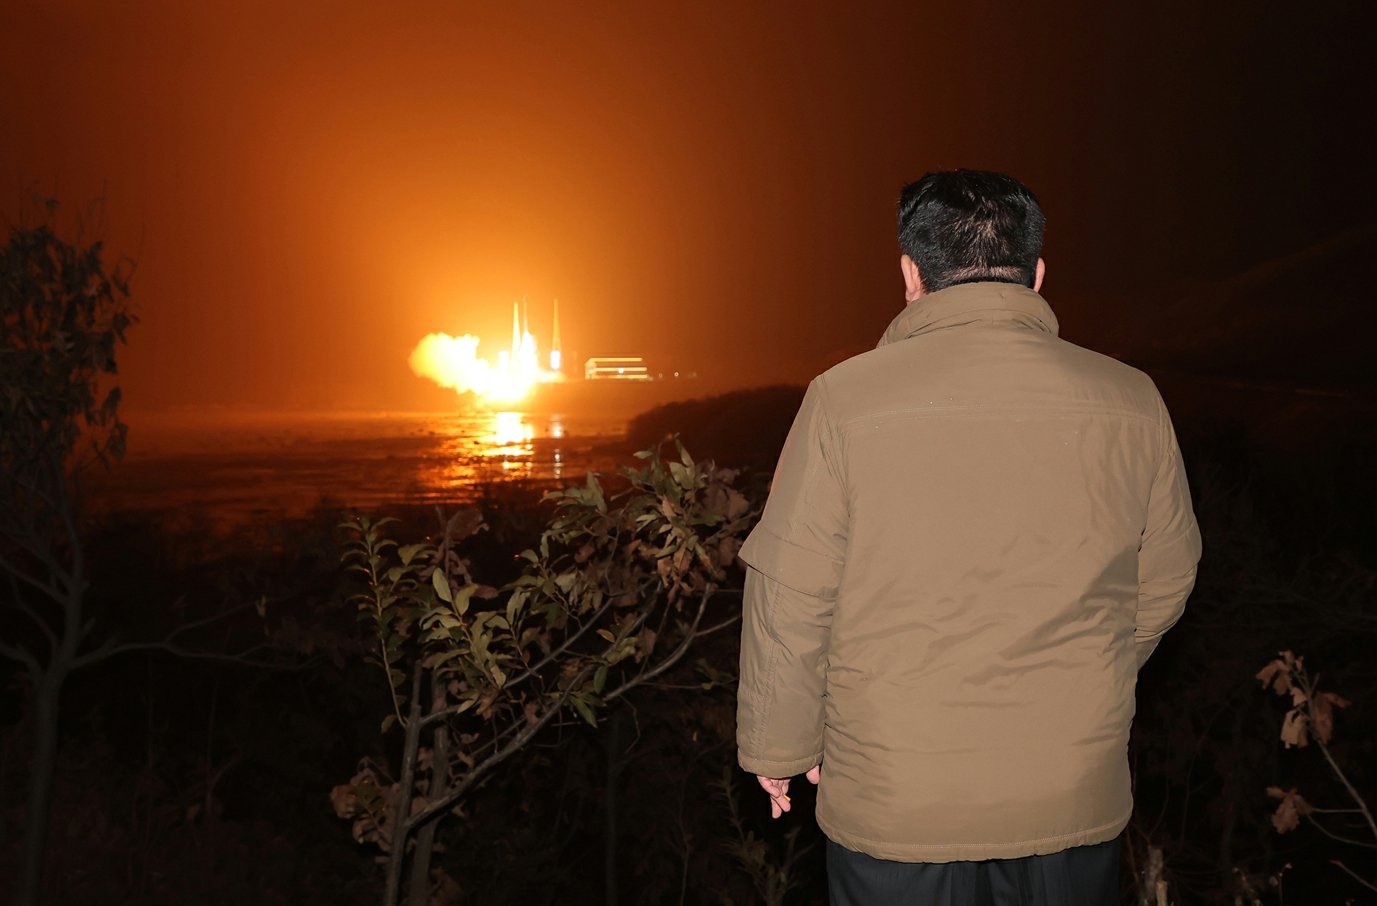 북한은 22일 전날 밤 발사한 군사정찰위성 '만리경 1호'를 운반로켓 ‘천리마-1형’에 탑재해 성공적으로 발사했다고 주장했다. 사진은 로켓발사모습을 참관하는 김정은 북한 국무위원장. 사진 노동신문